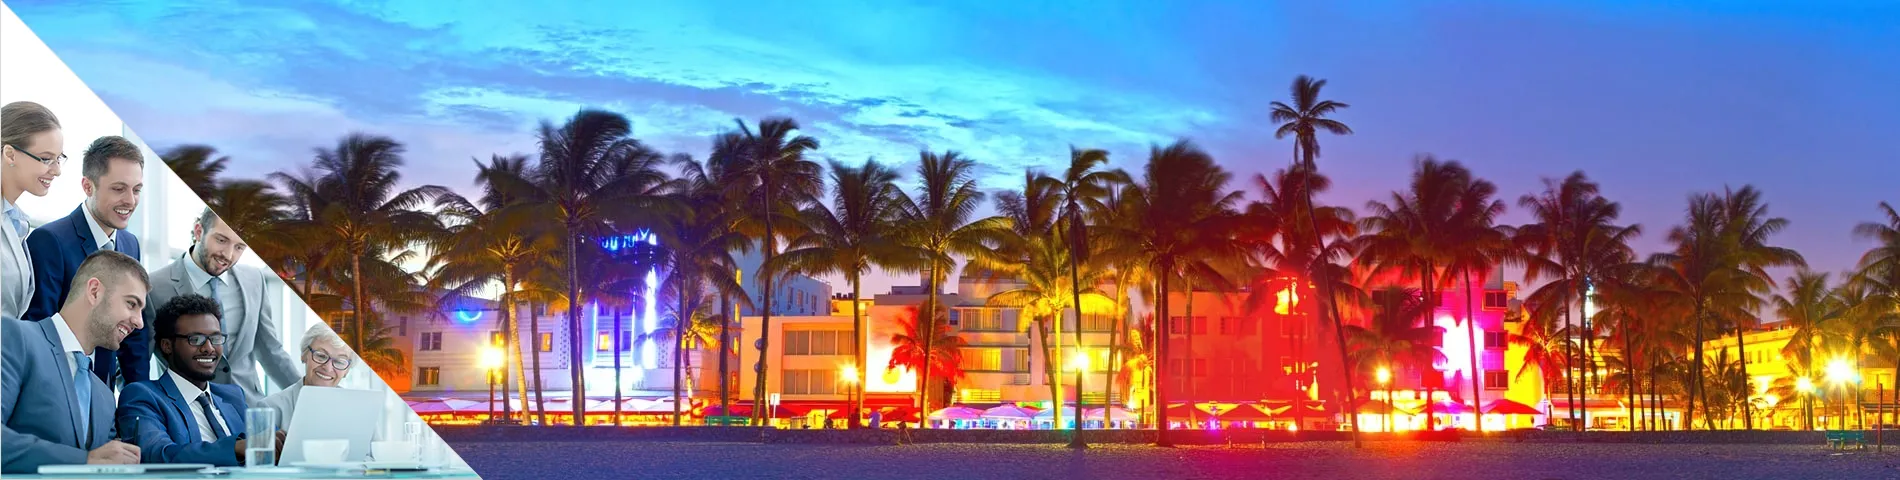 Miami - 